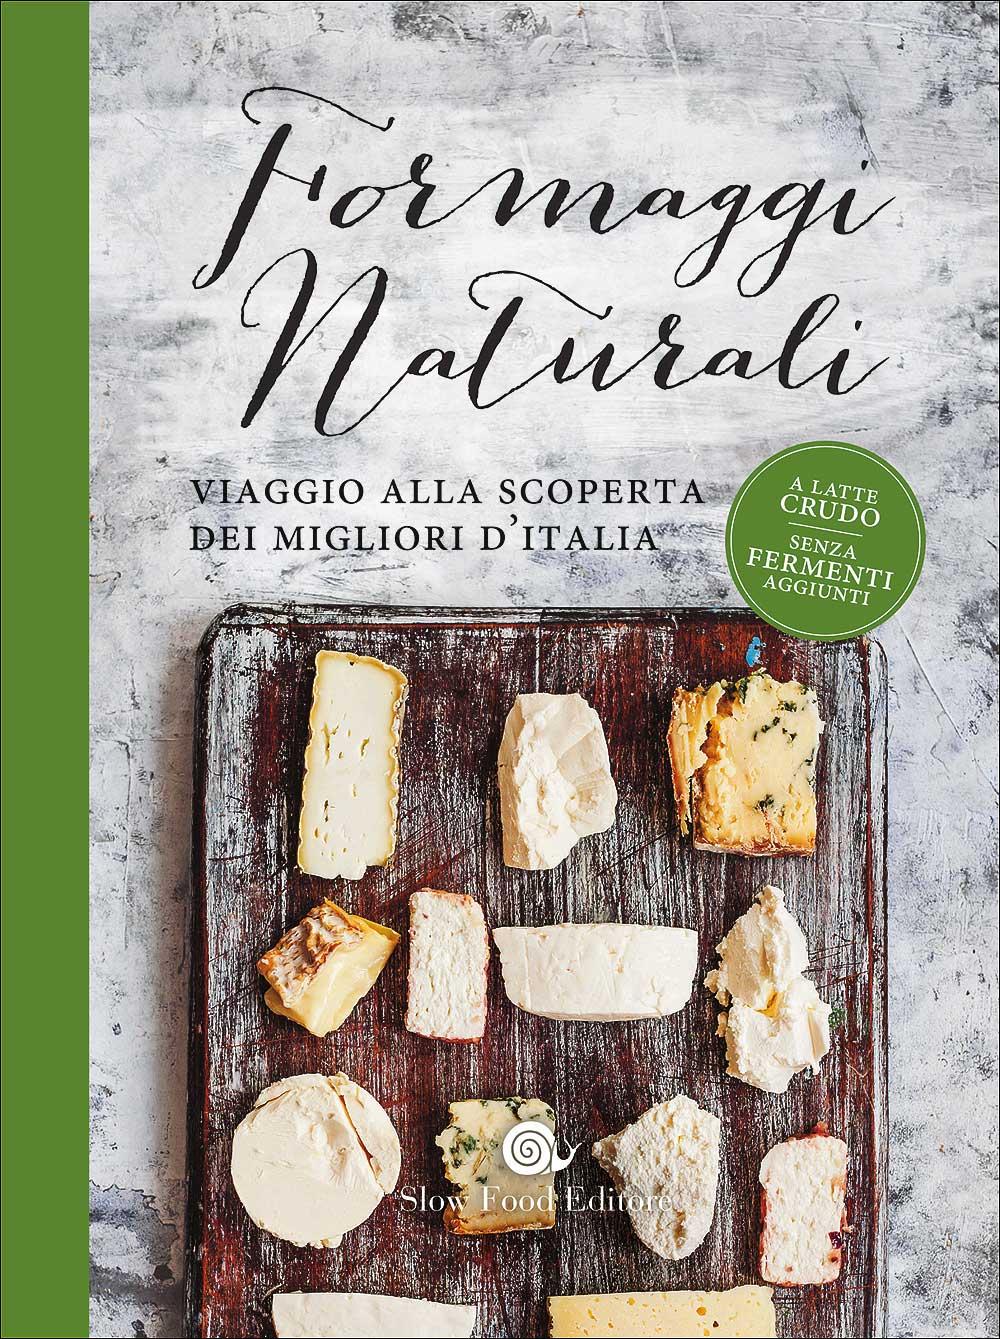 Presentazione del libro di Piero Sardo, pubblicato da Slow Food Editore: Formaggi naturali. Viaggio alla scoperta dei migliori d’Italia.